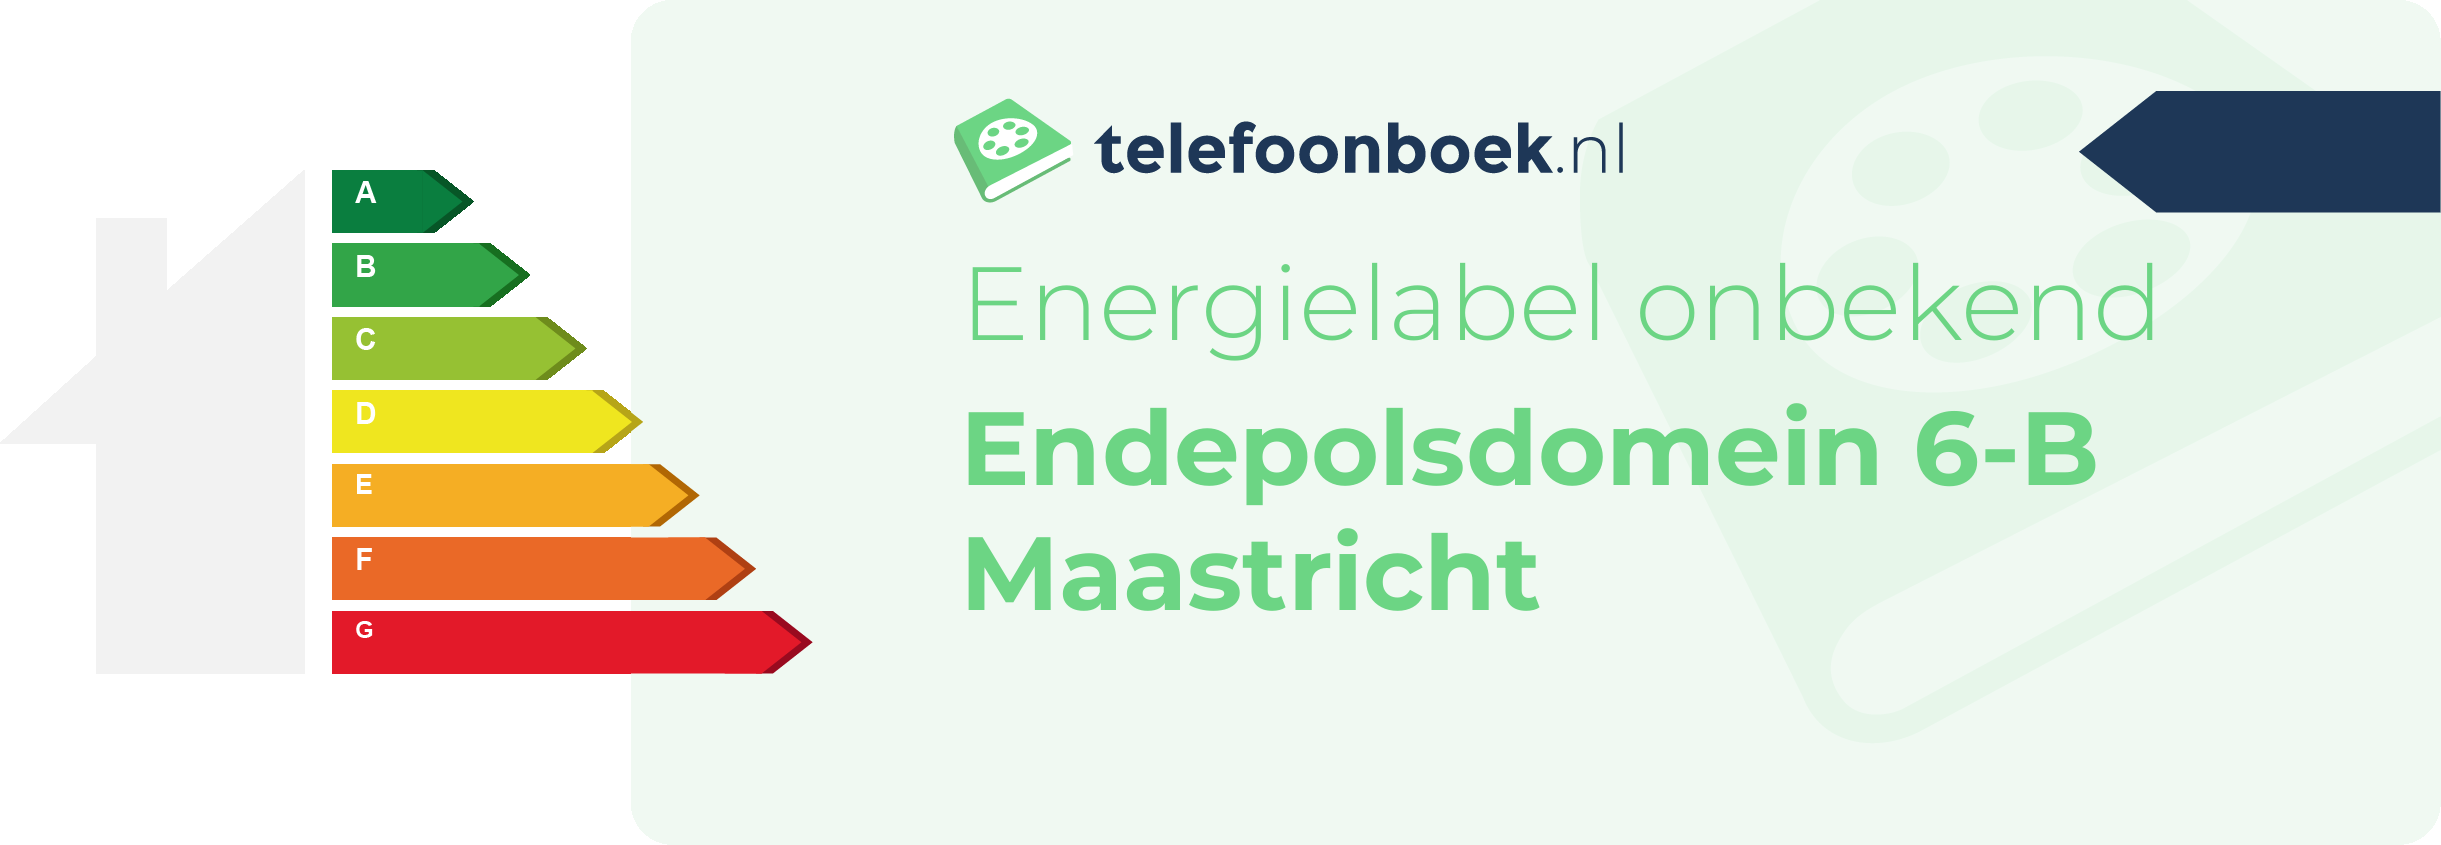 Energielabel Endepolsdomein 6-B Maastricht